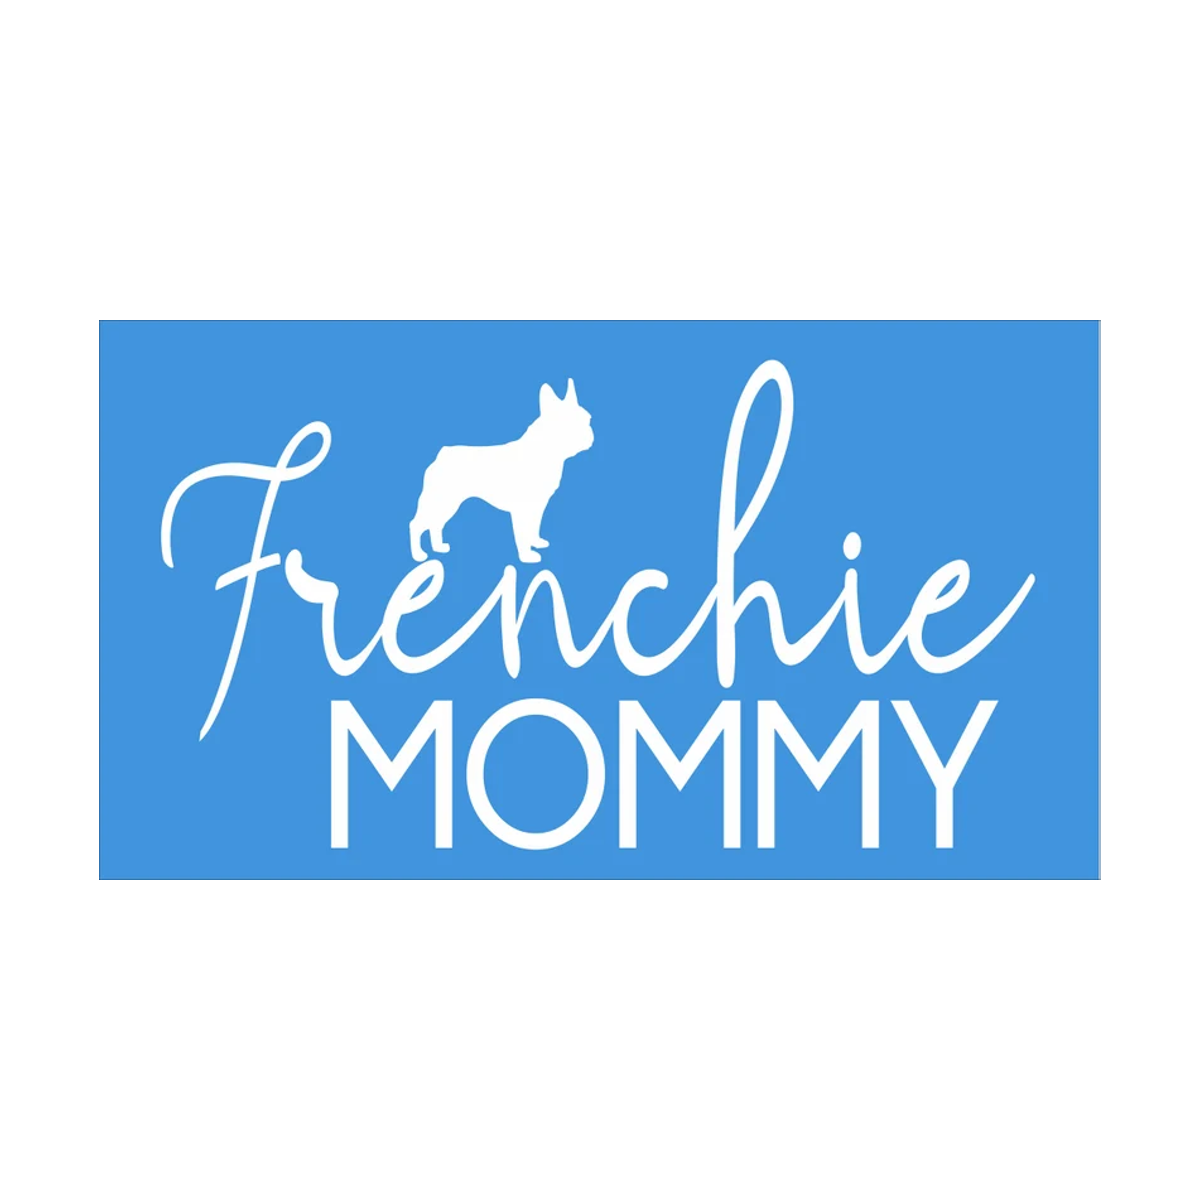 Frenchie Mommy Stencil - Superior Stencils